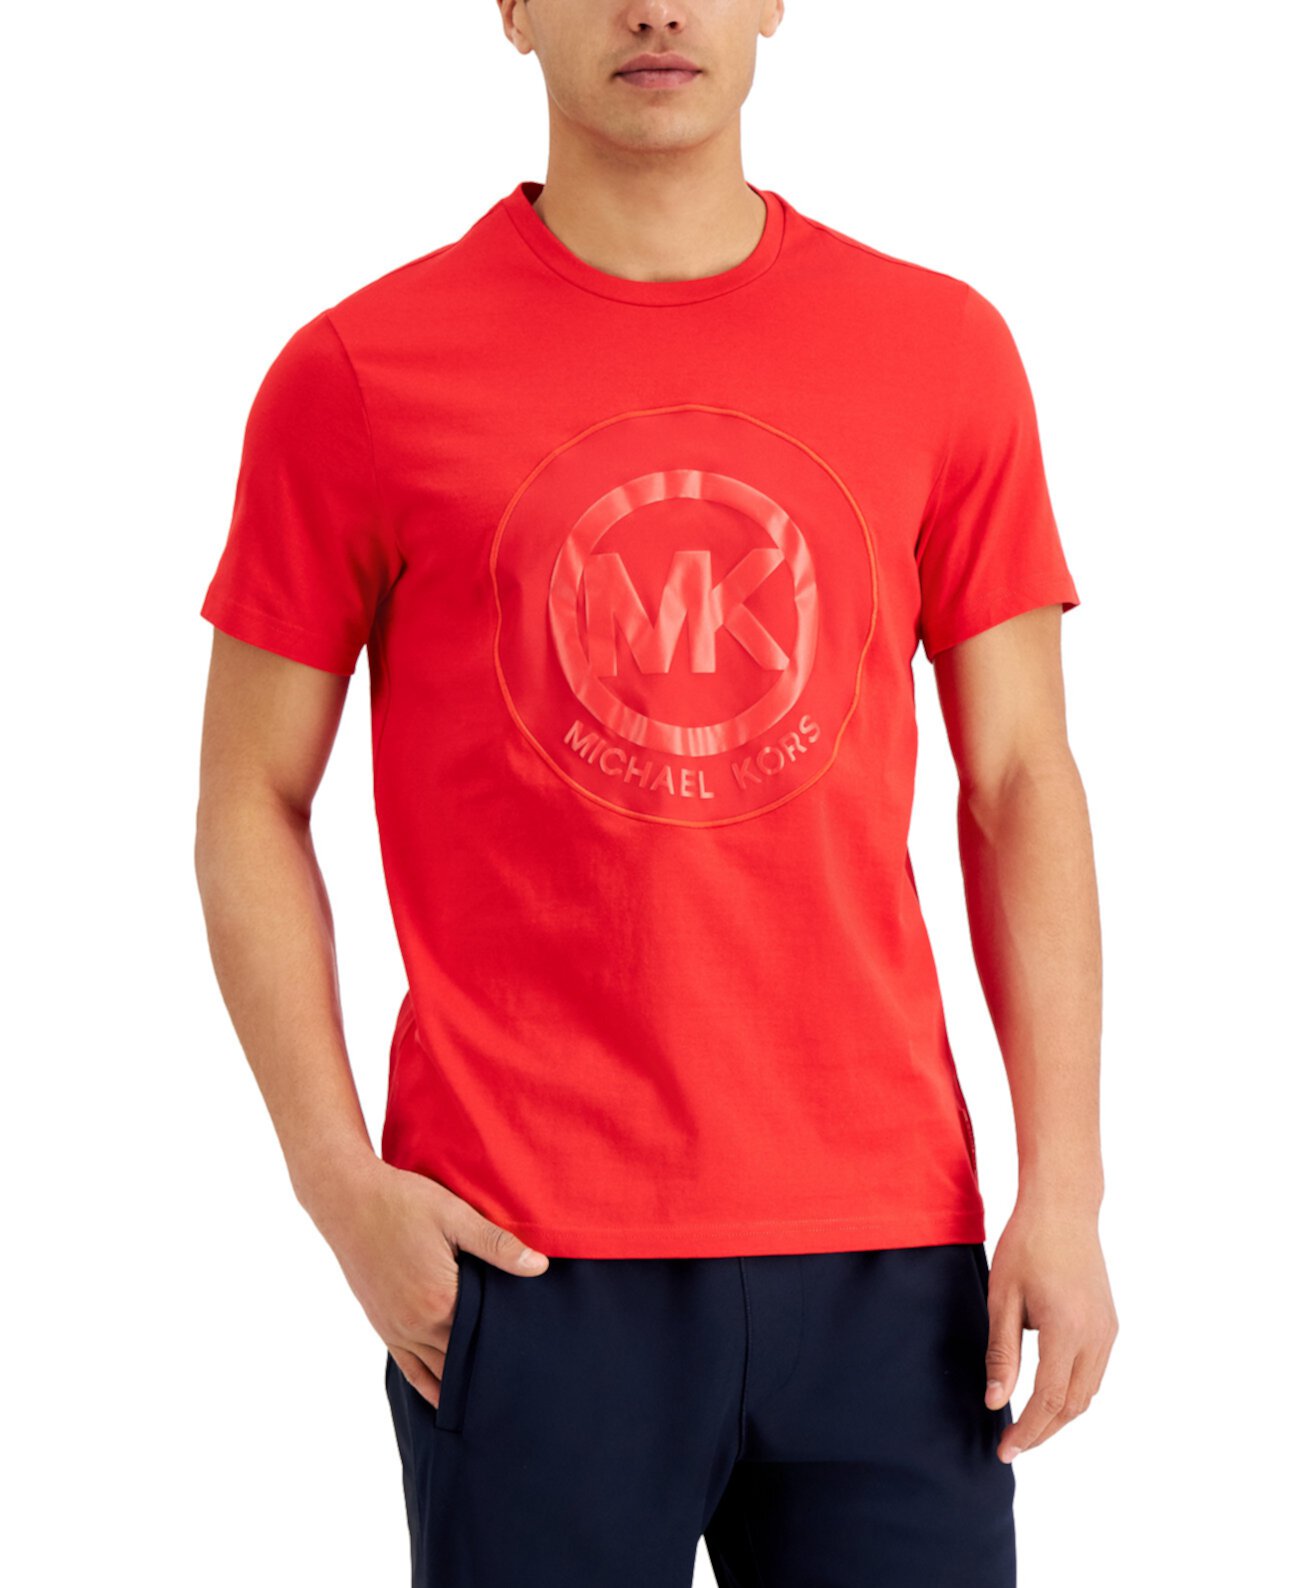 Мужская атласная футболка с логотипом и аппликацией Michael Kors